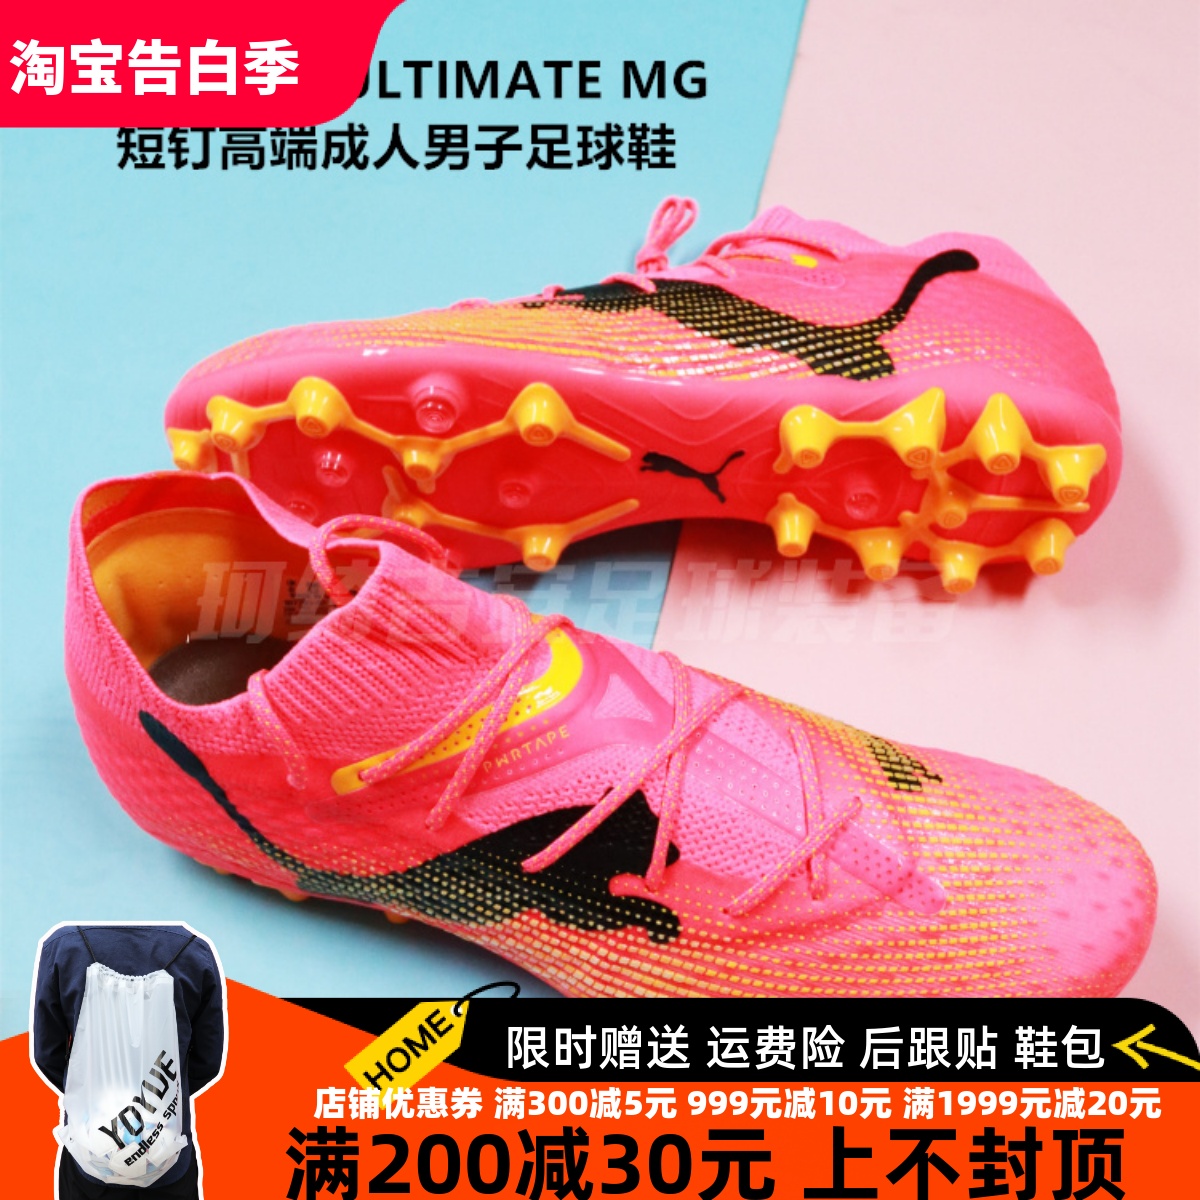 彪马 FUTURE7 ULTIMATE MG短钉高端成人男子足球鞋107703-03